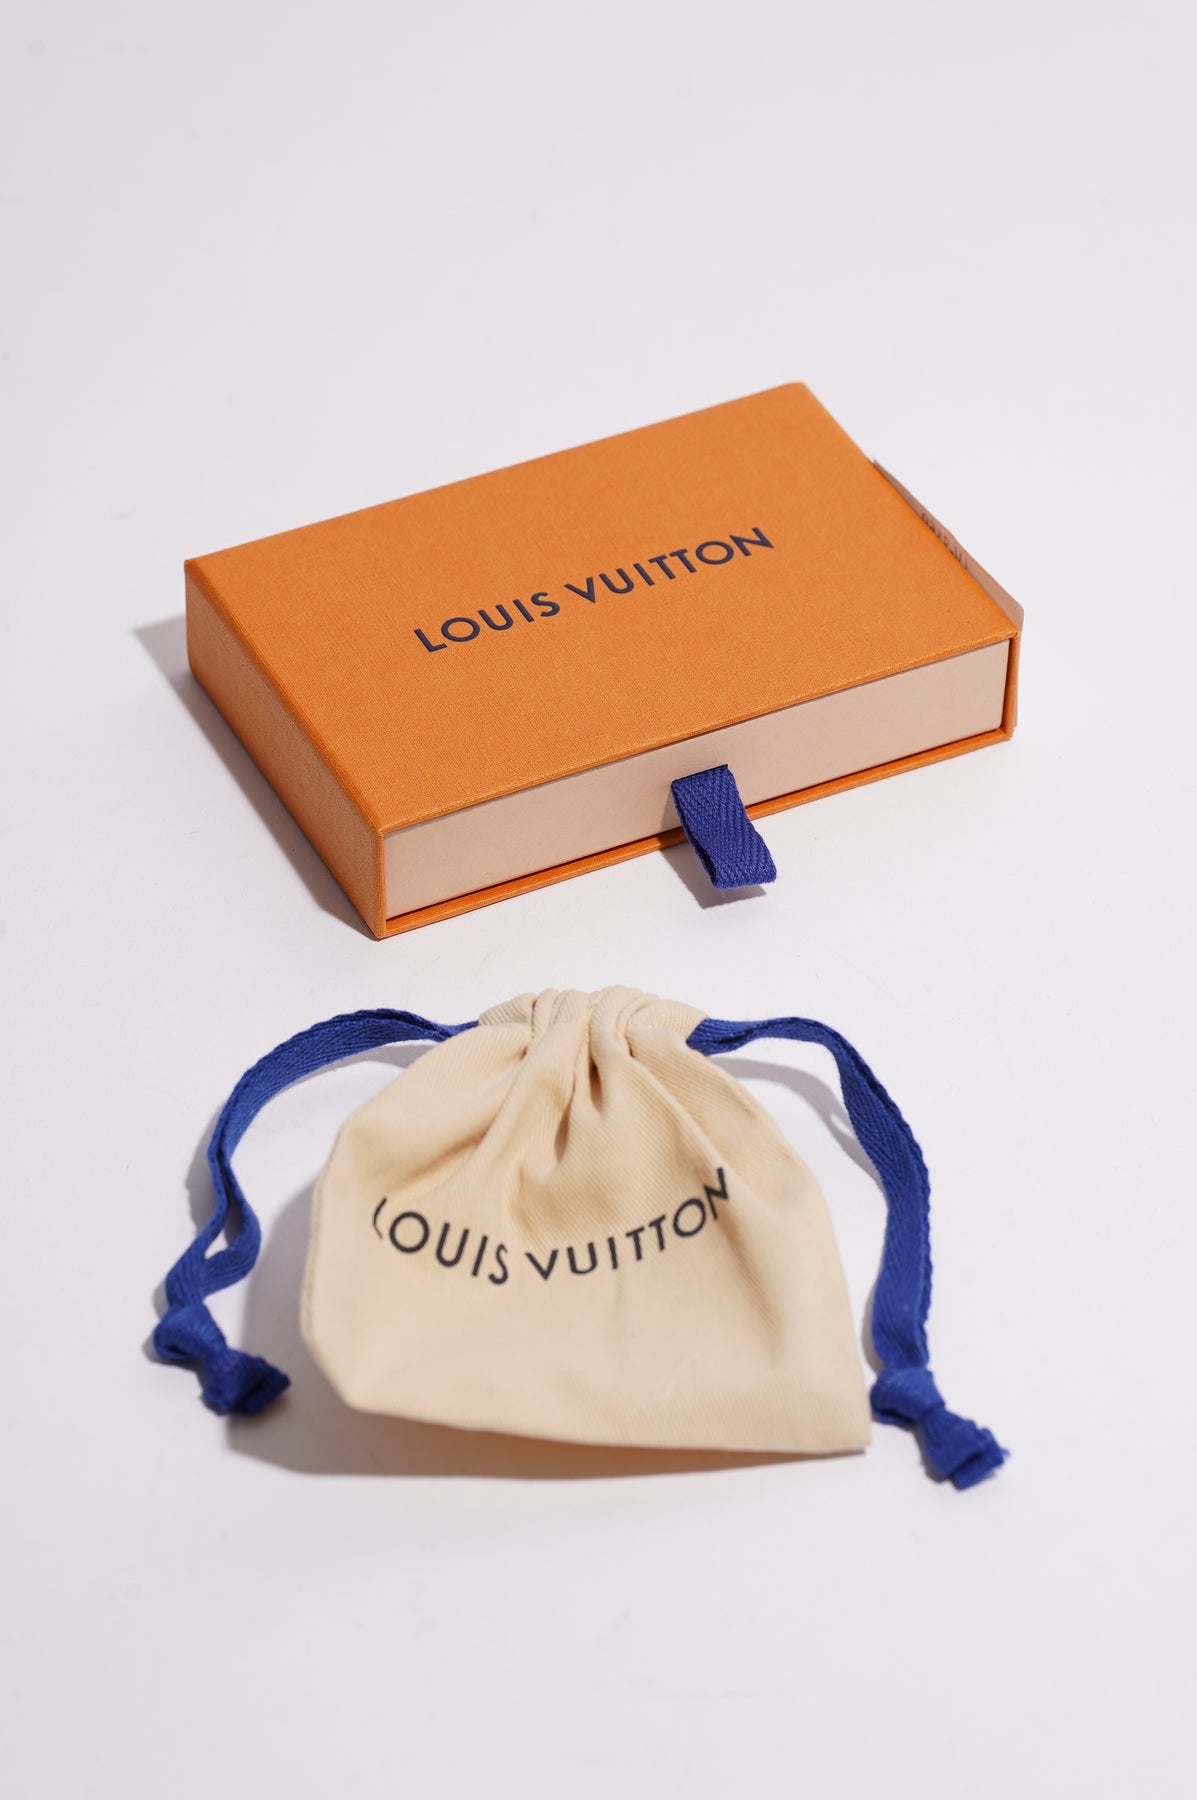 Auth Louis Vuitton Daily Confidential Bracelet sz 17